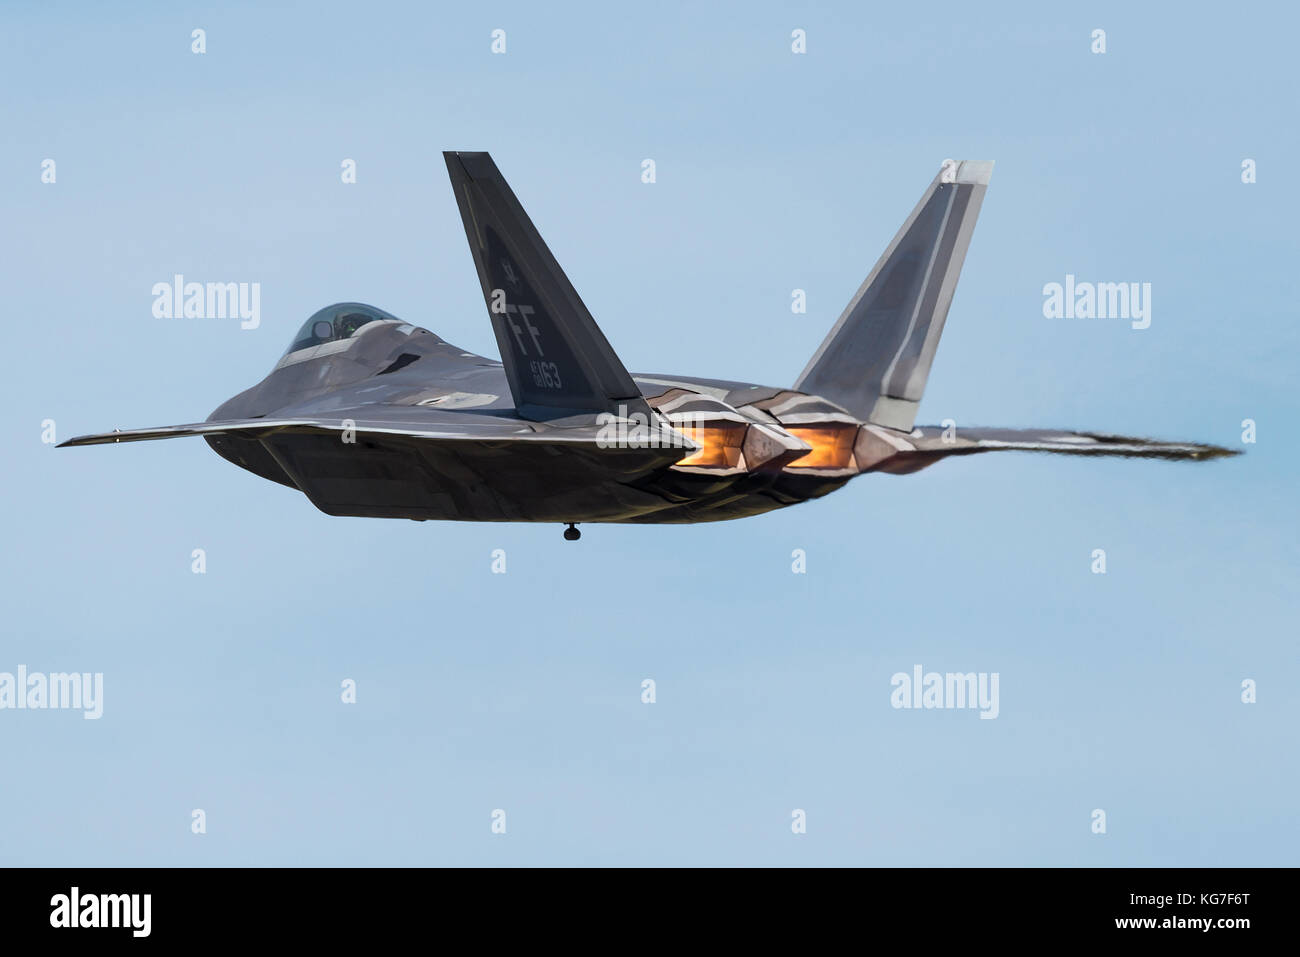 Un F-22 Raptor de quinta generación, de un solo asiento, bimotor, sigilo de todo tiempo, aviones de combate táctico desarrollado por la Fuerza Aérea de los Estados Unidos. Foto de stock